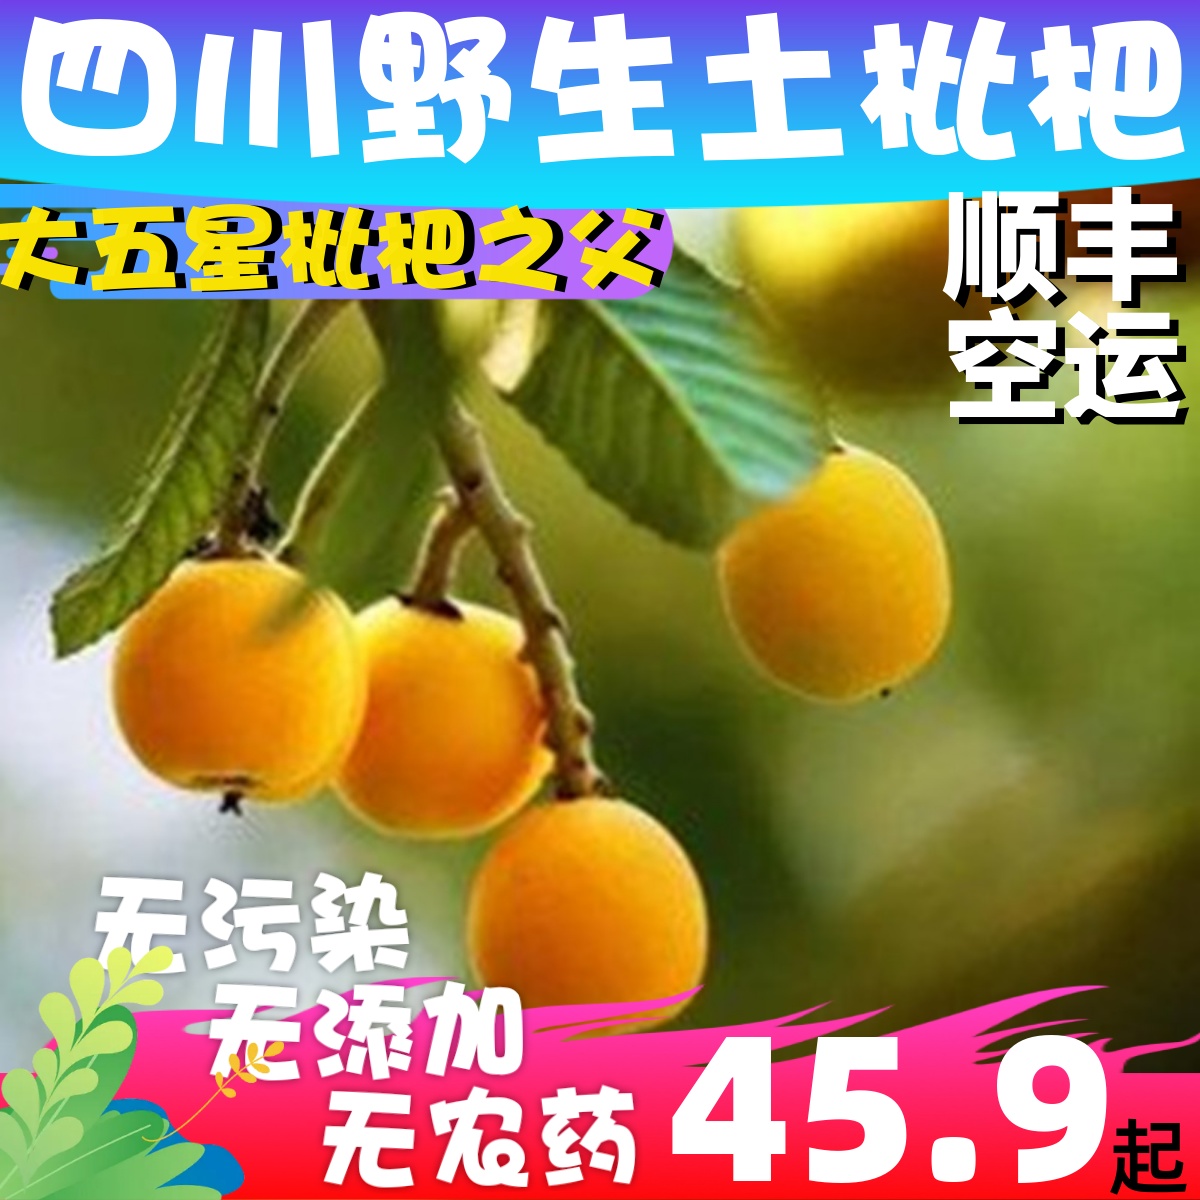 顺丰空运四川高山野枇杷土琵琶新鲜孕妇水果纯天然无污染当季时令